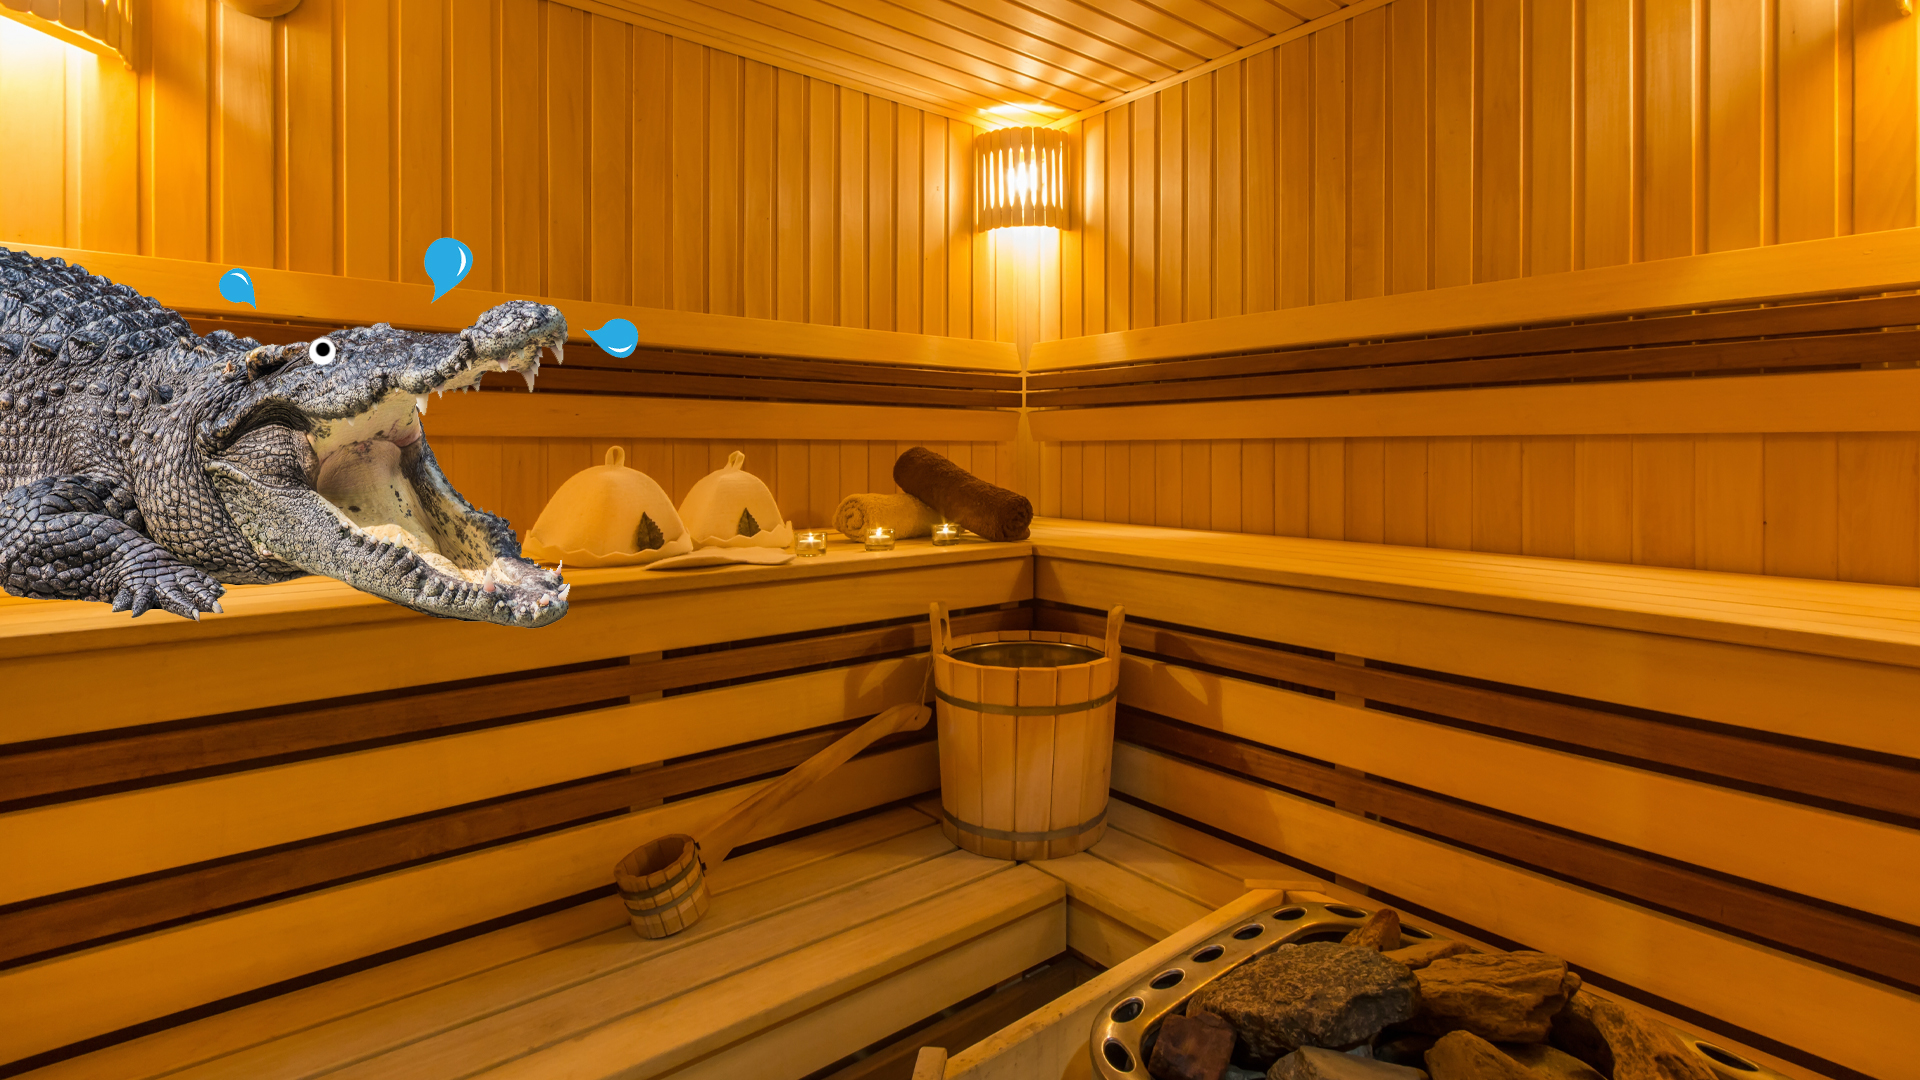 A crocodile in a sauna